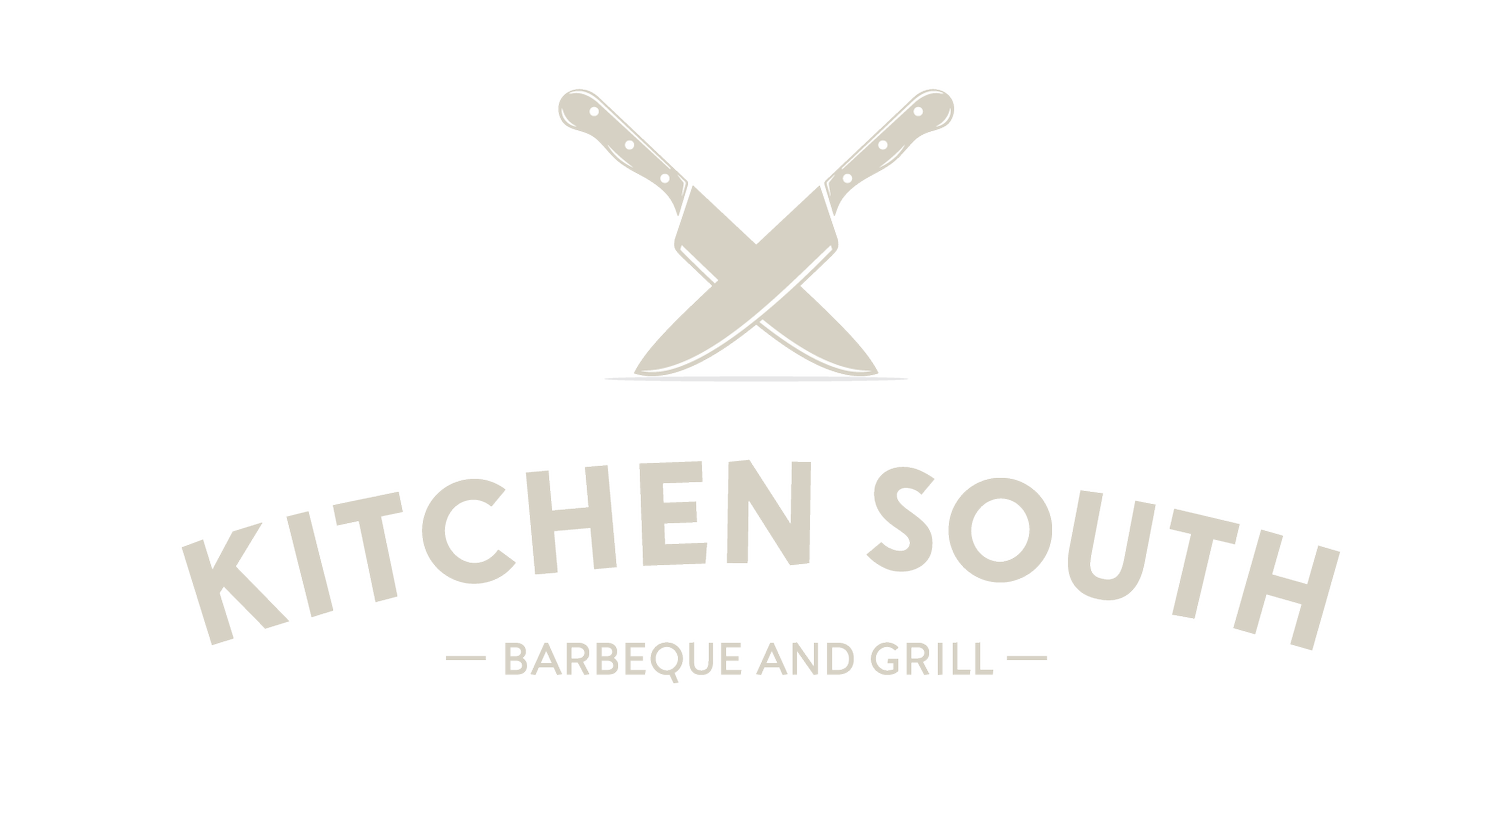 Kitchen South LLC